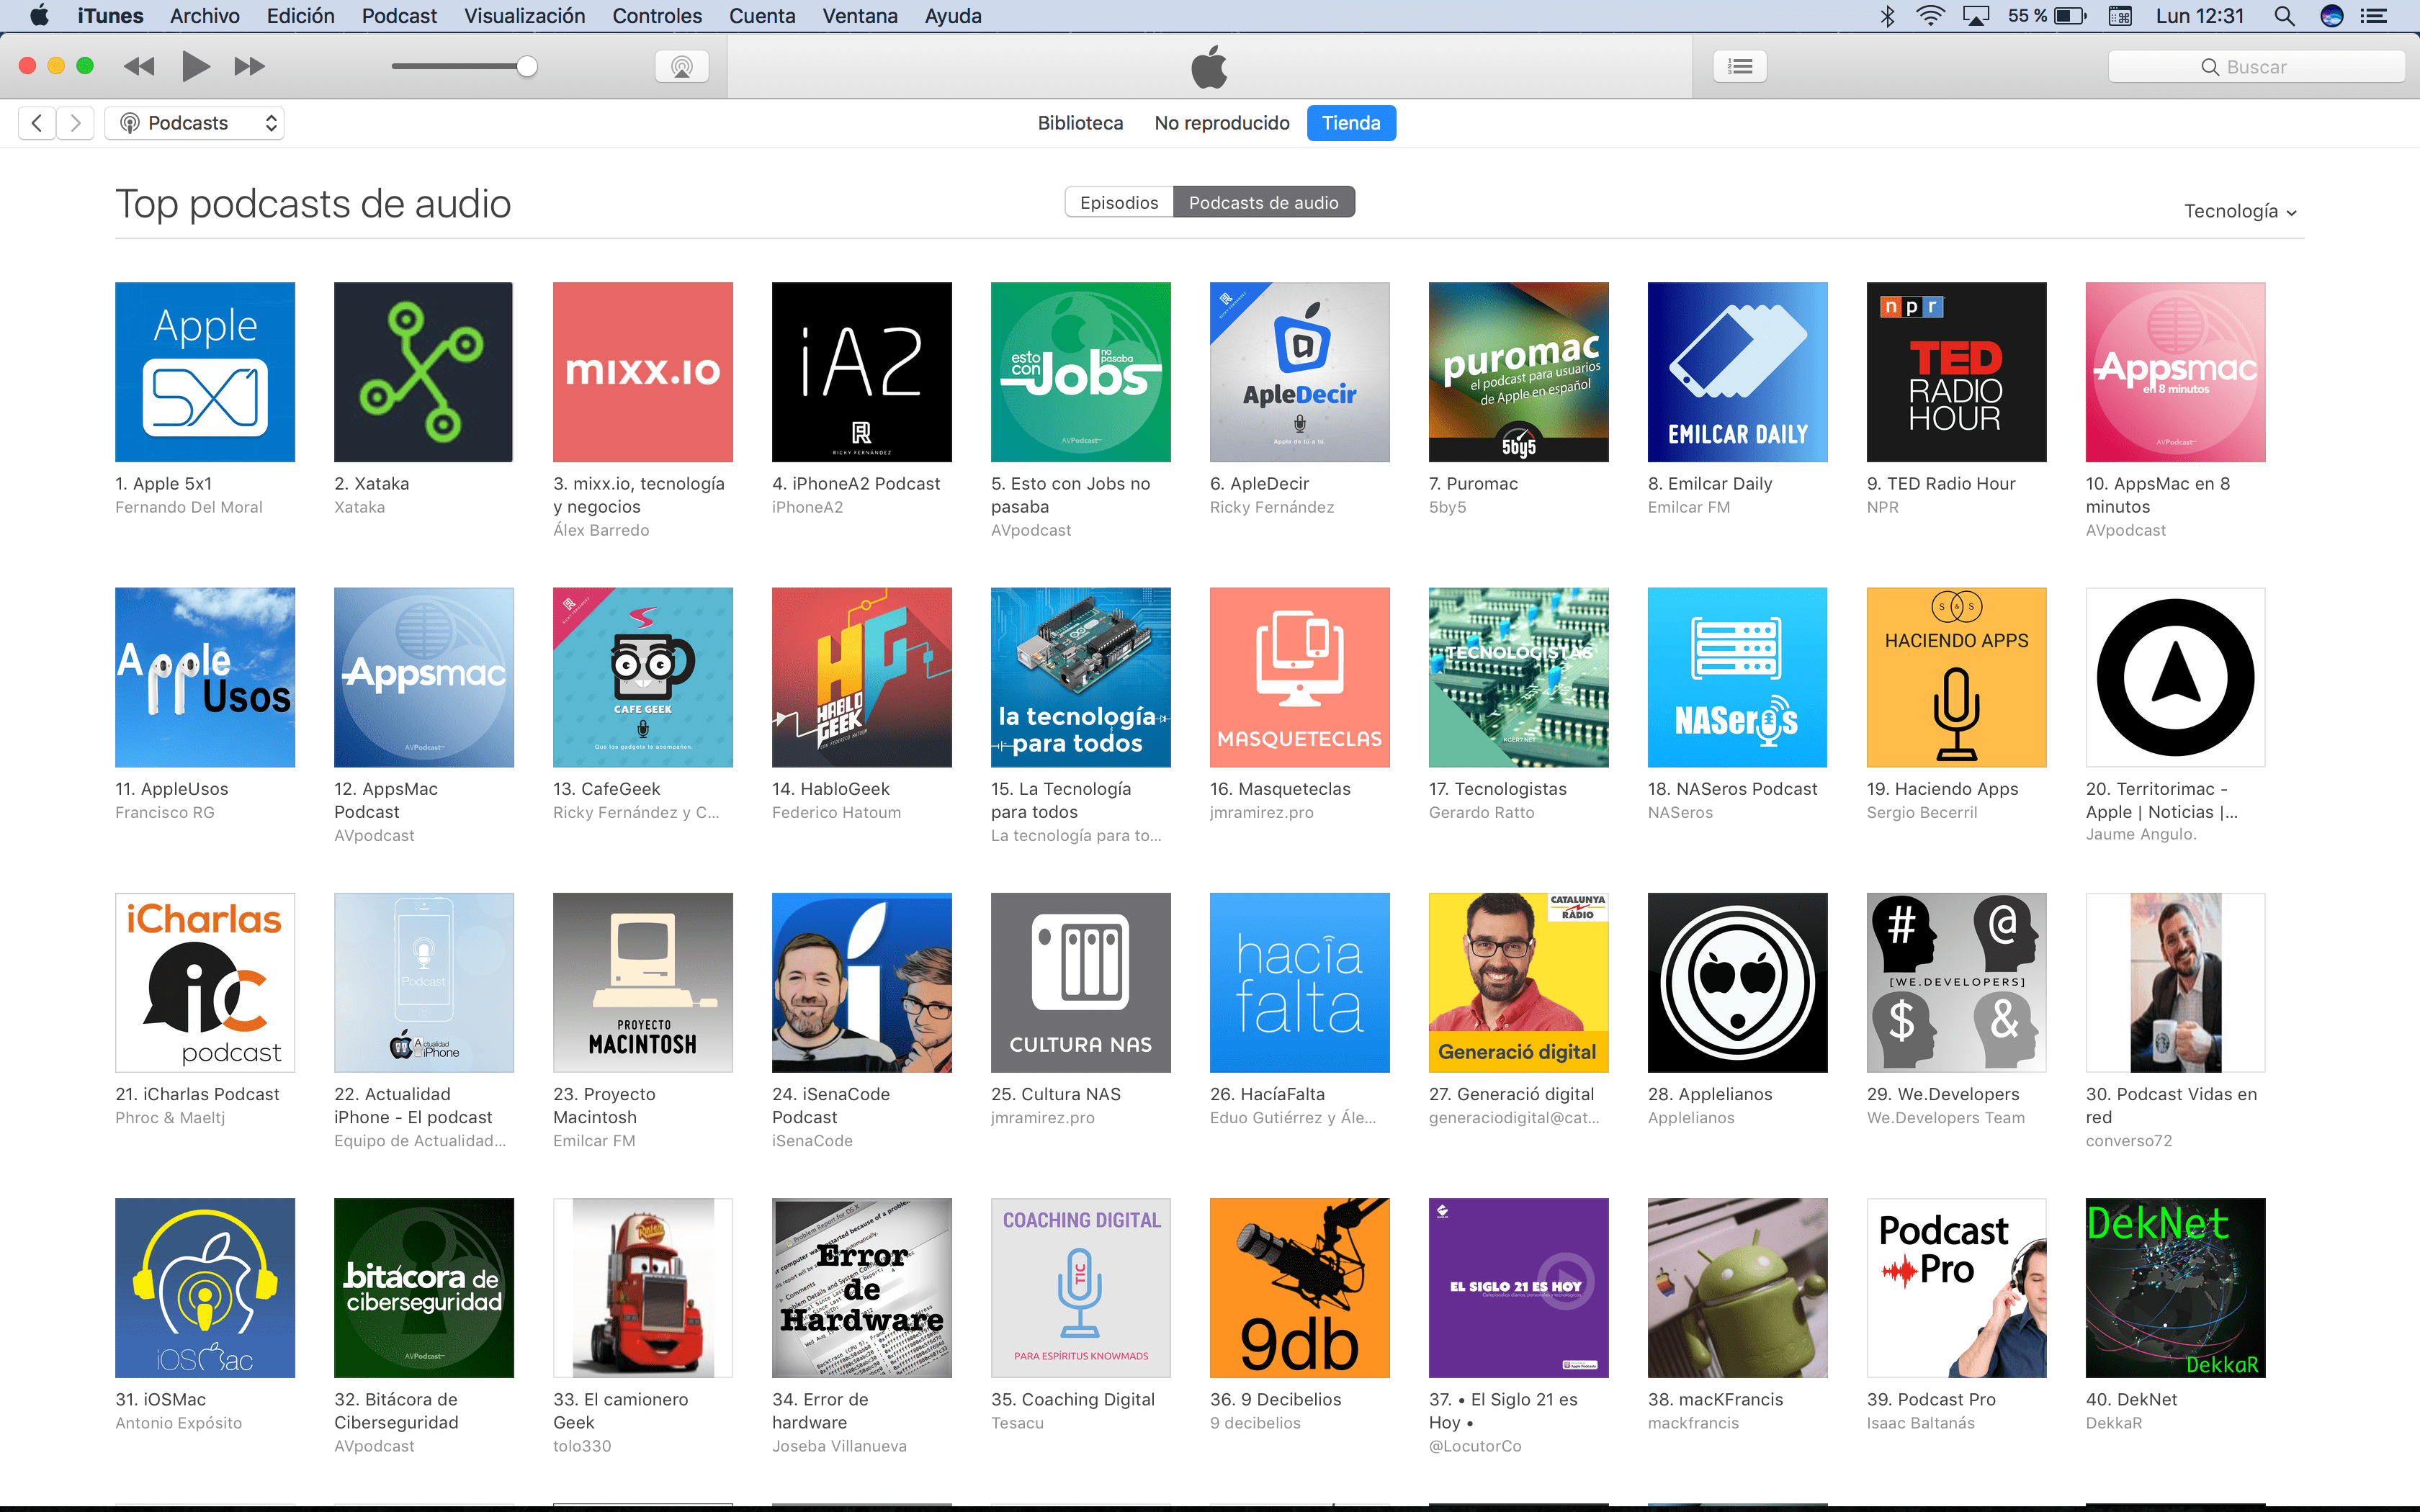 Haciendo Apps - El Podcast